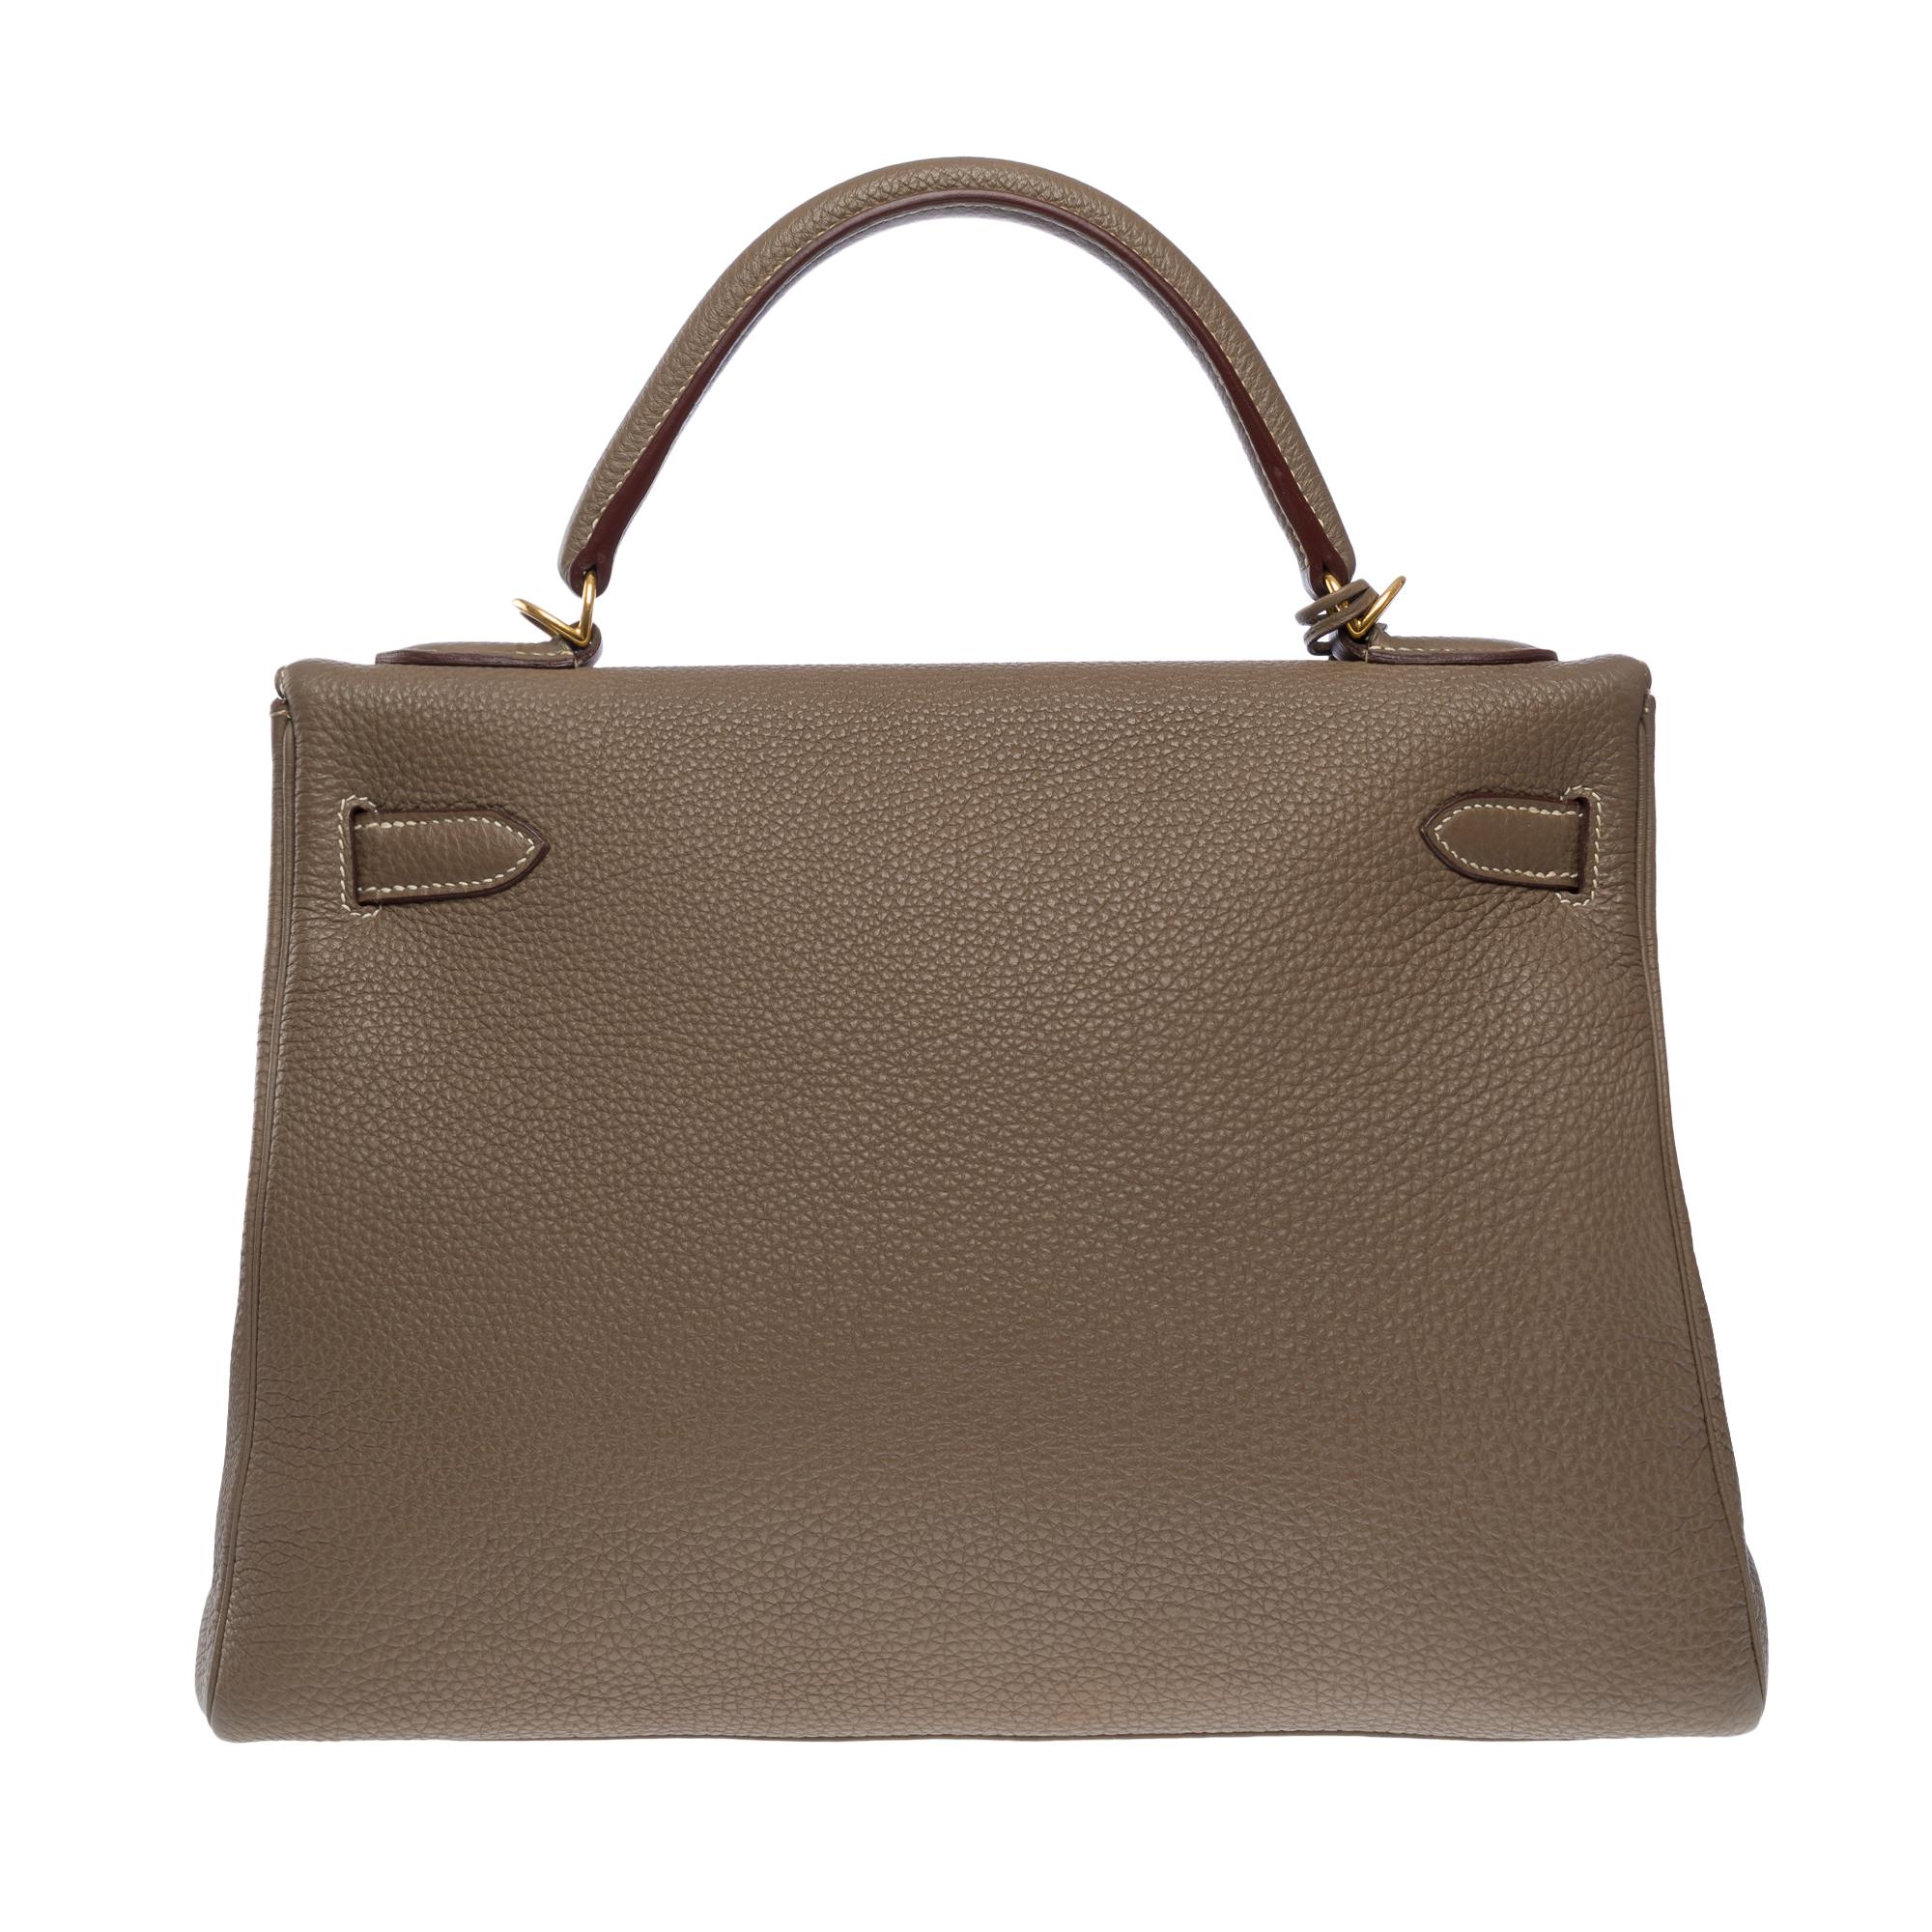 Women's or Men's Superb Hermès Kelly 32 retourne handbag strap in Togo etoupe leather , GHW